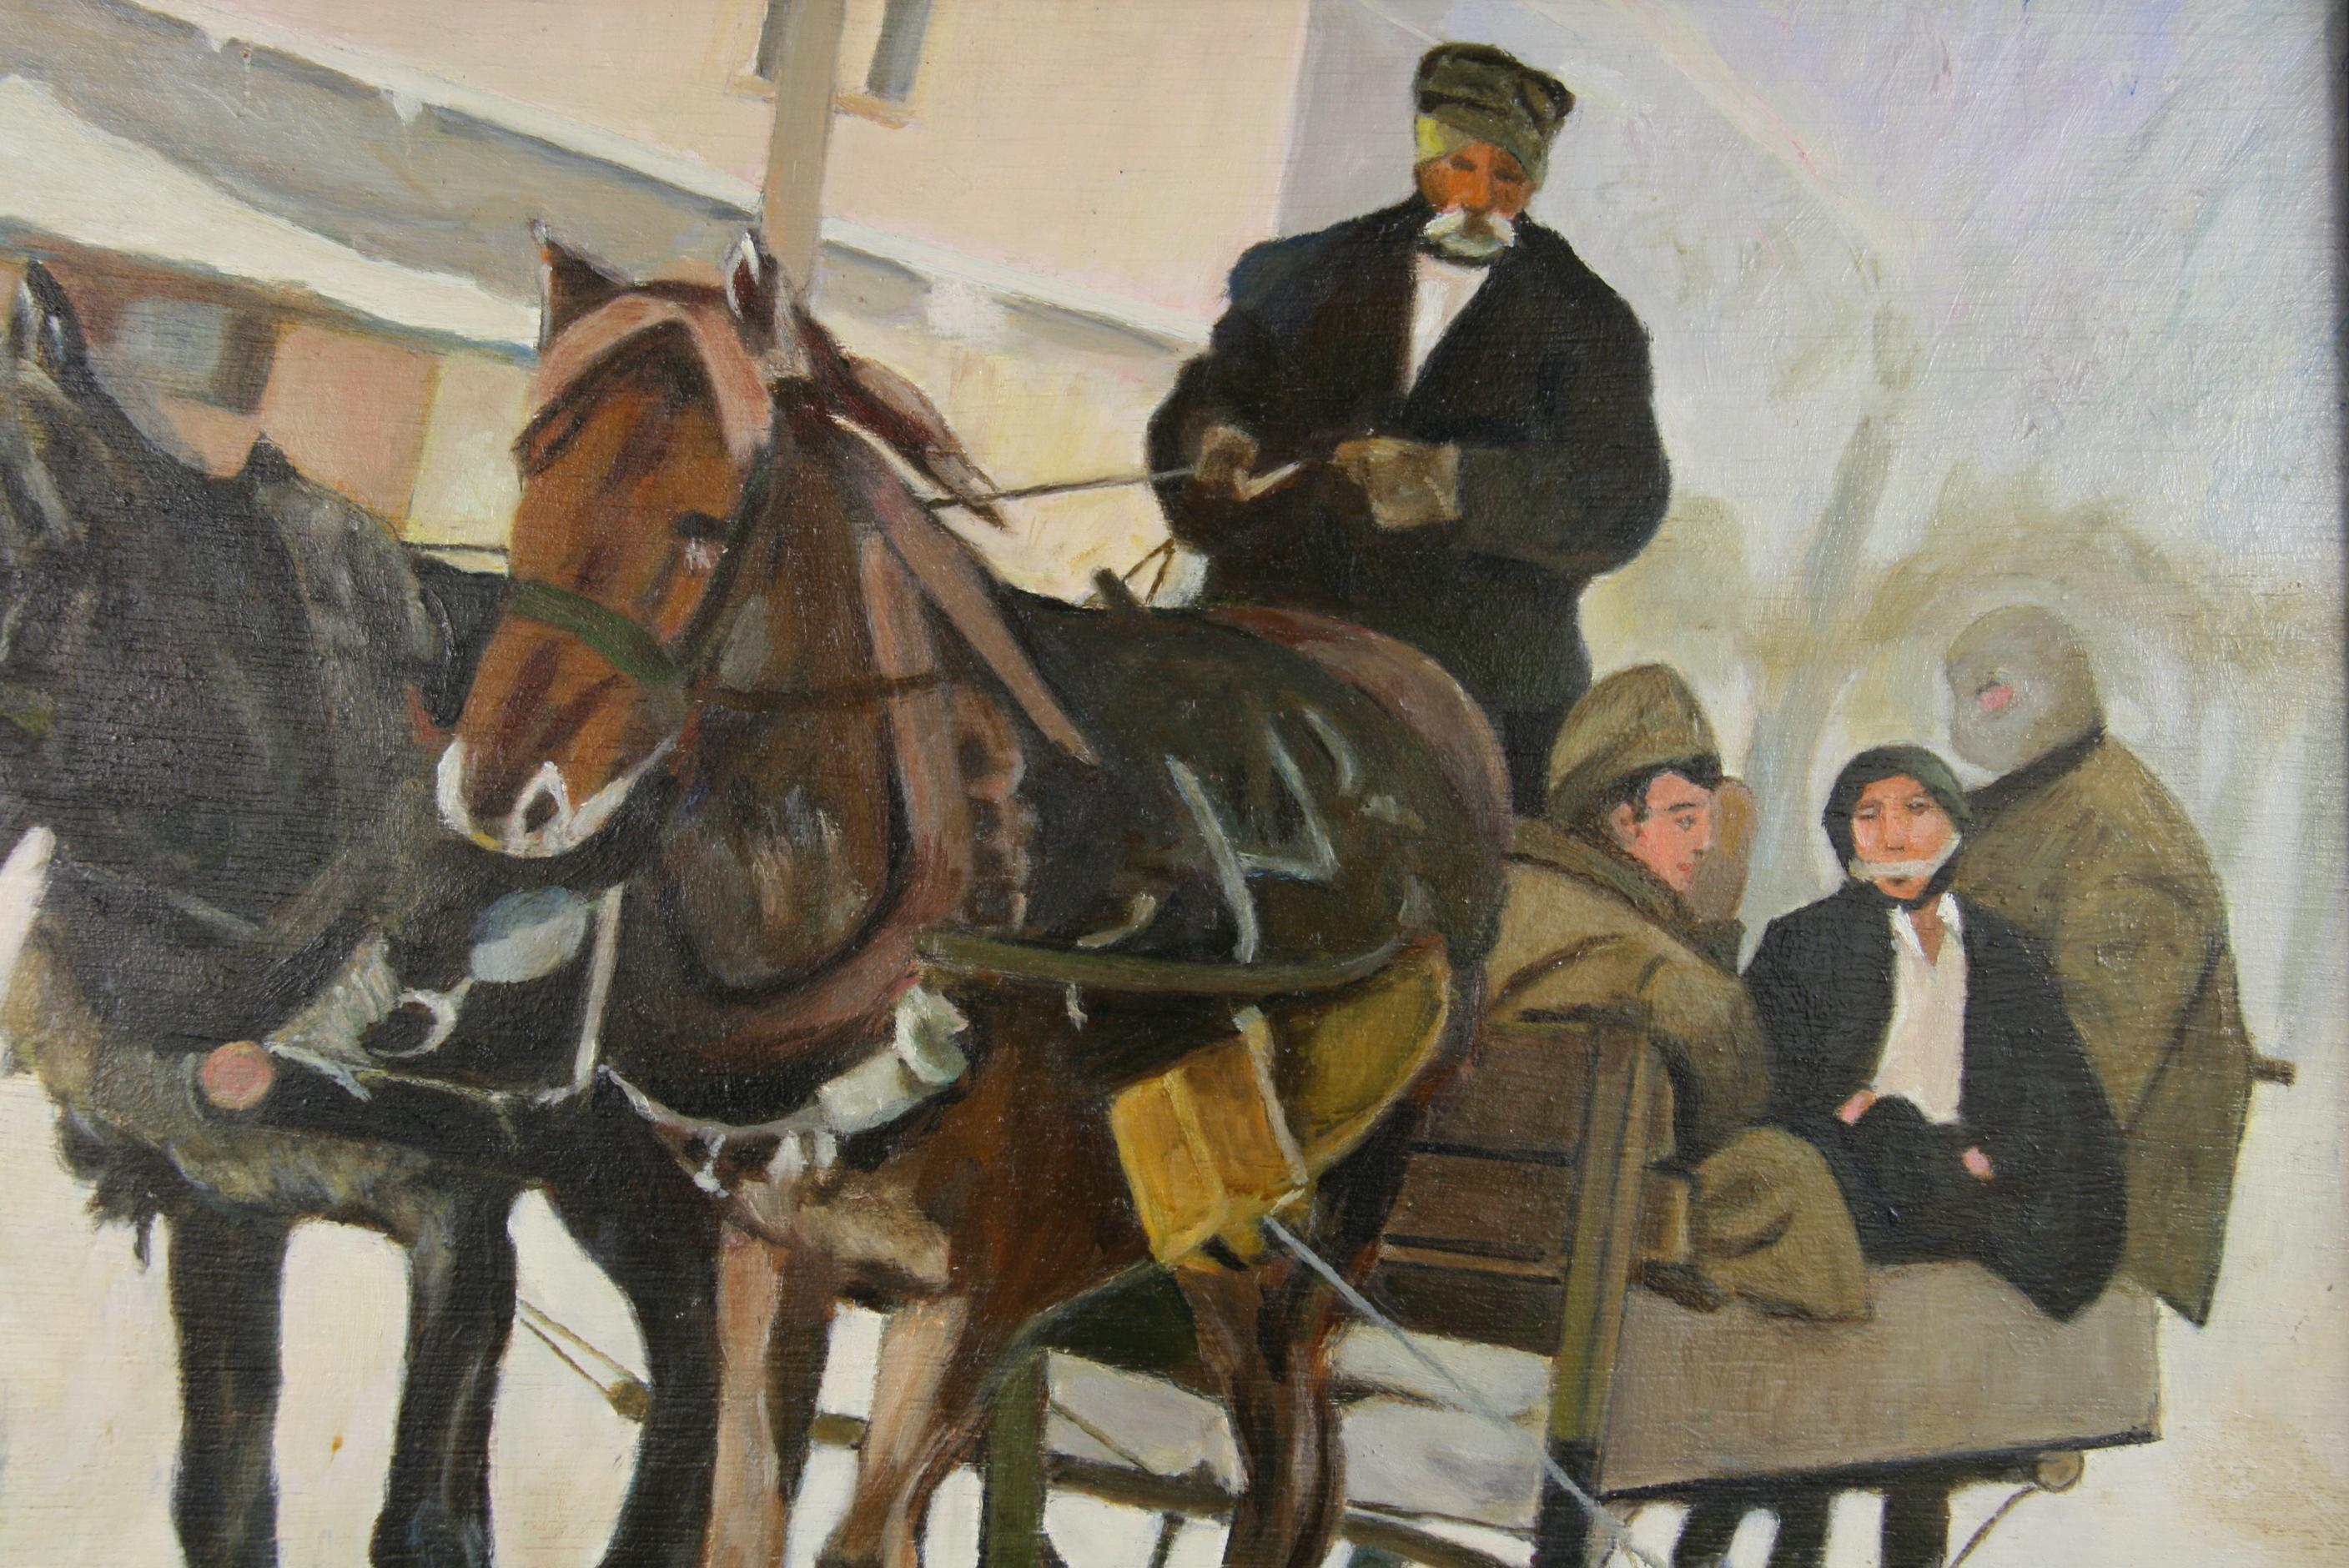  Cadre de traîneau figuratif de paysage avec cheval drapé  - Painting de J.A. Waine